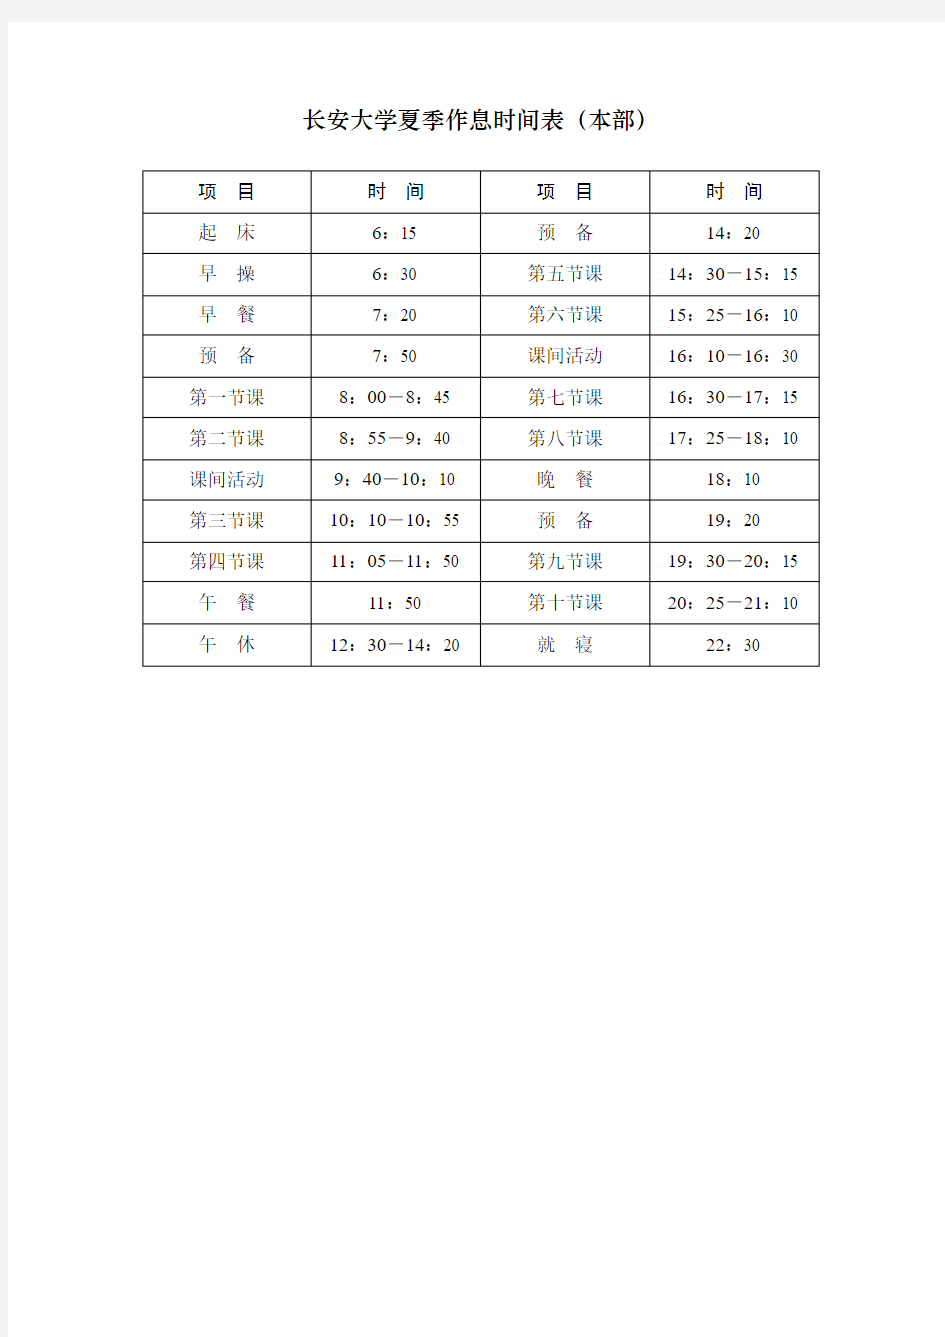 长安大学夏季作息时间表(本部)